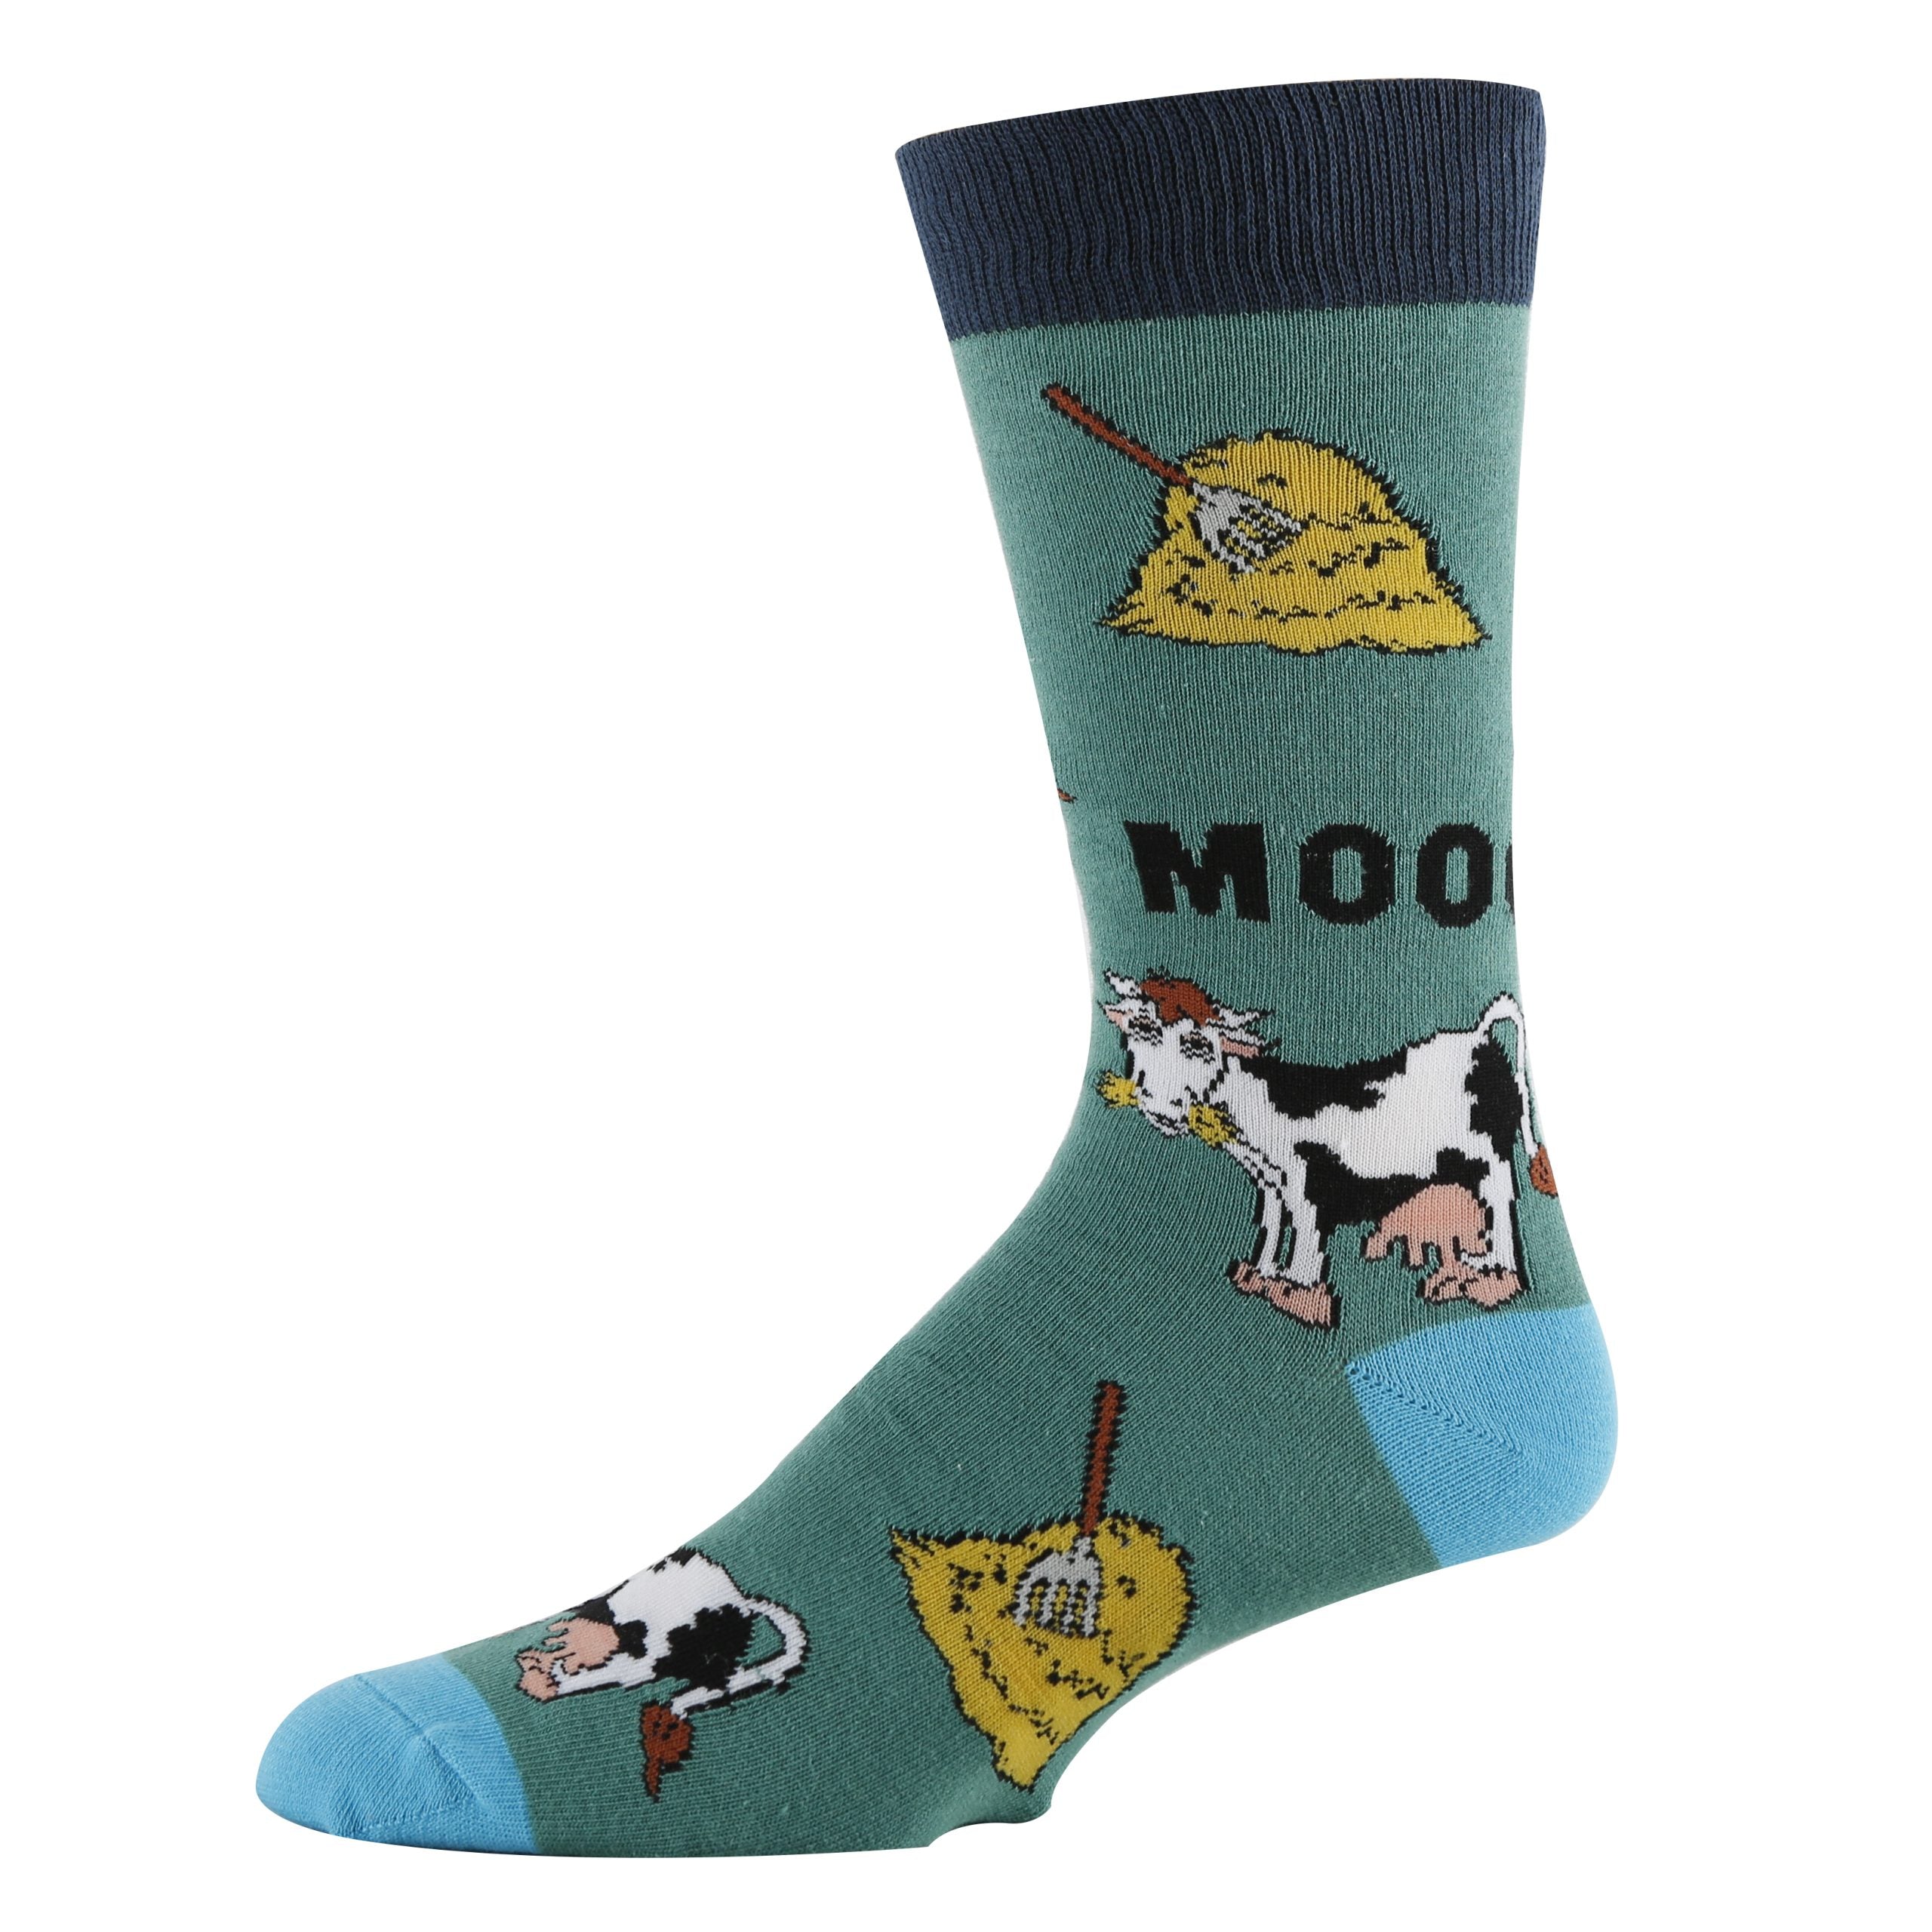 Mooo Socks